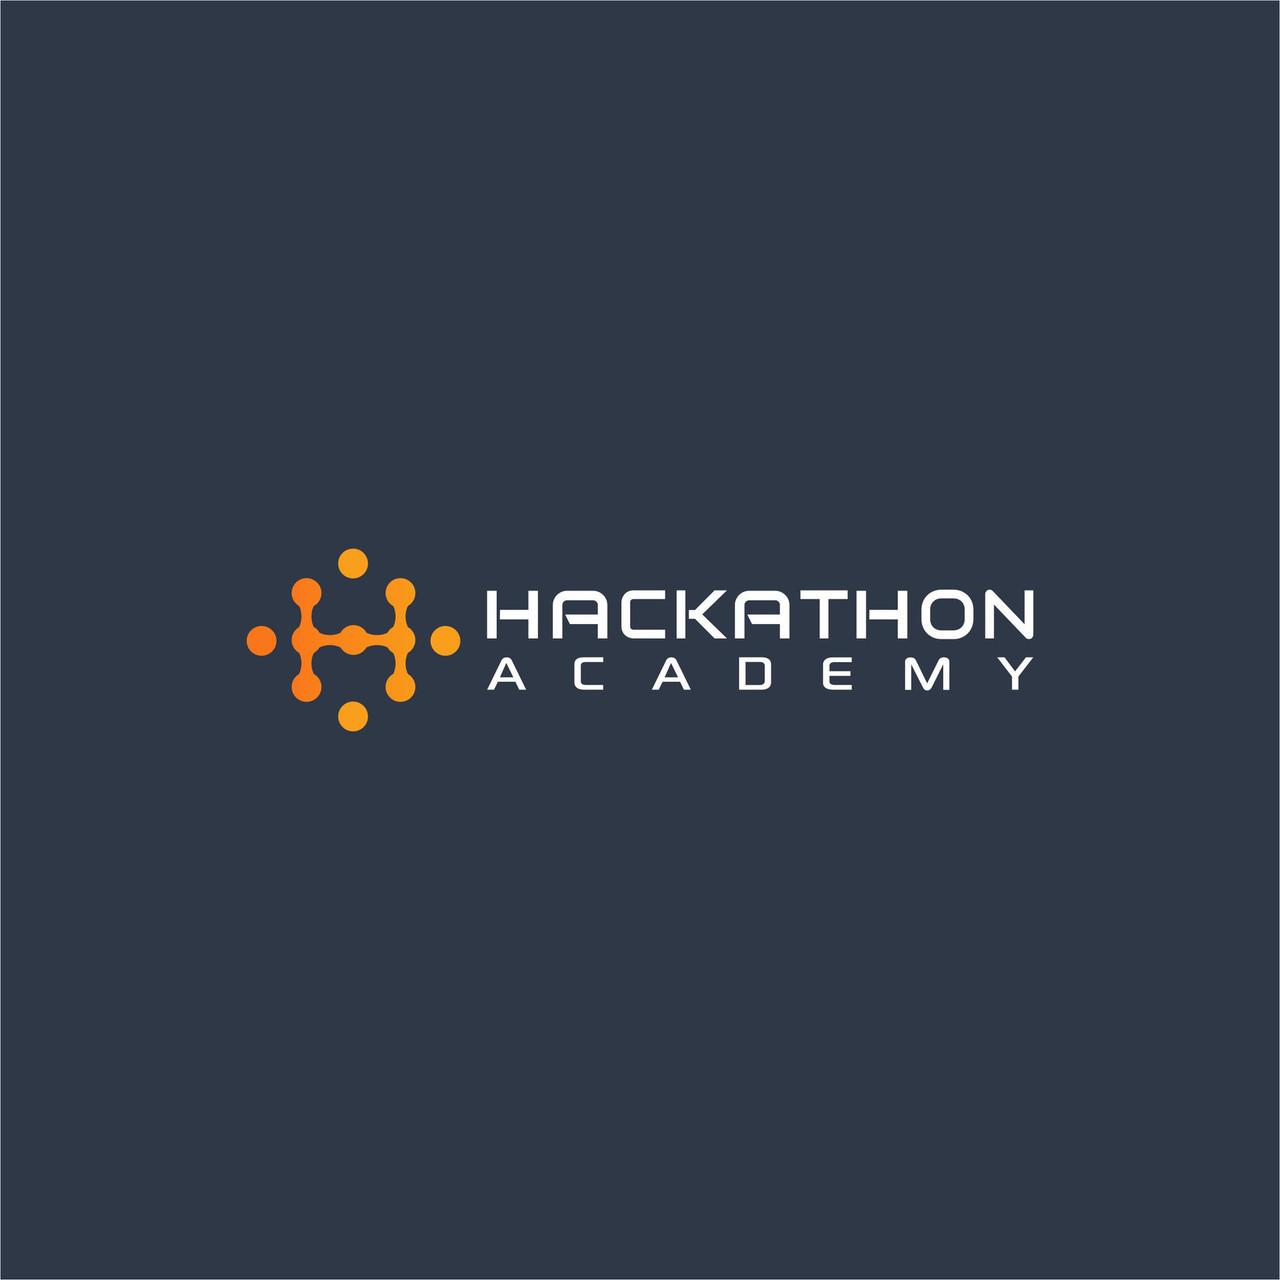 Hackathon Academy